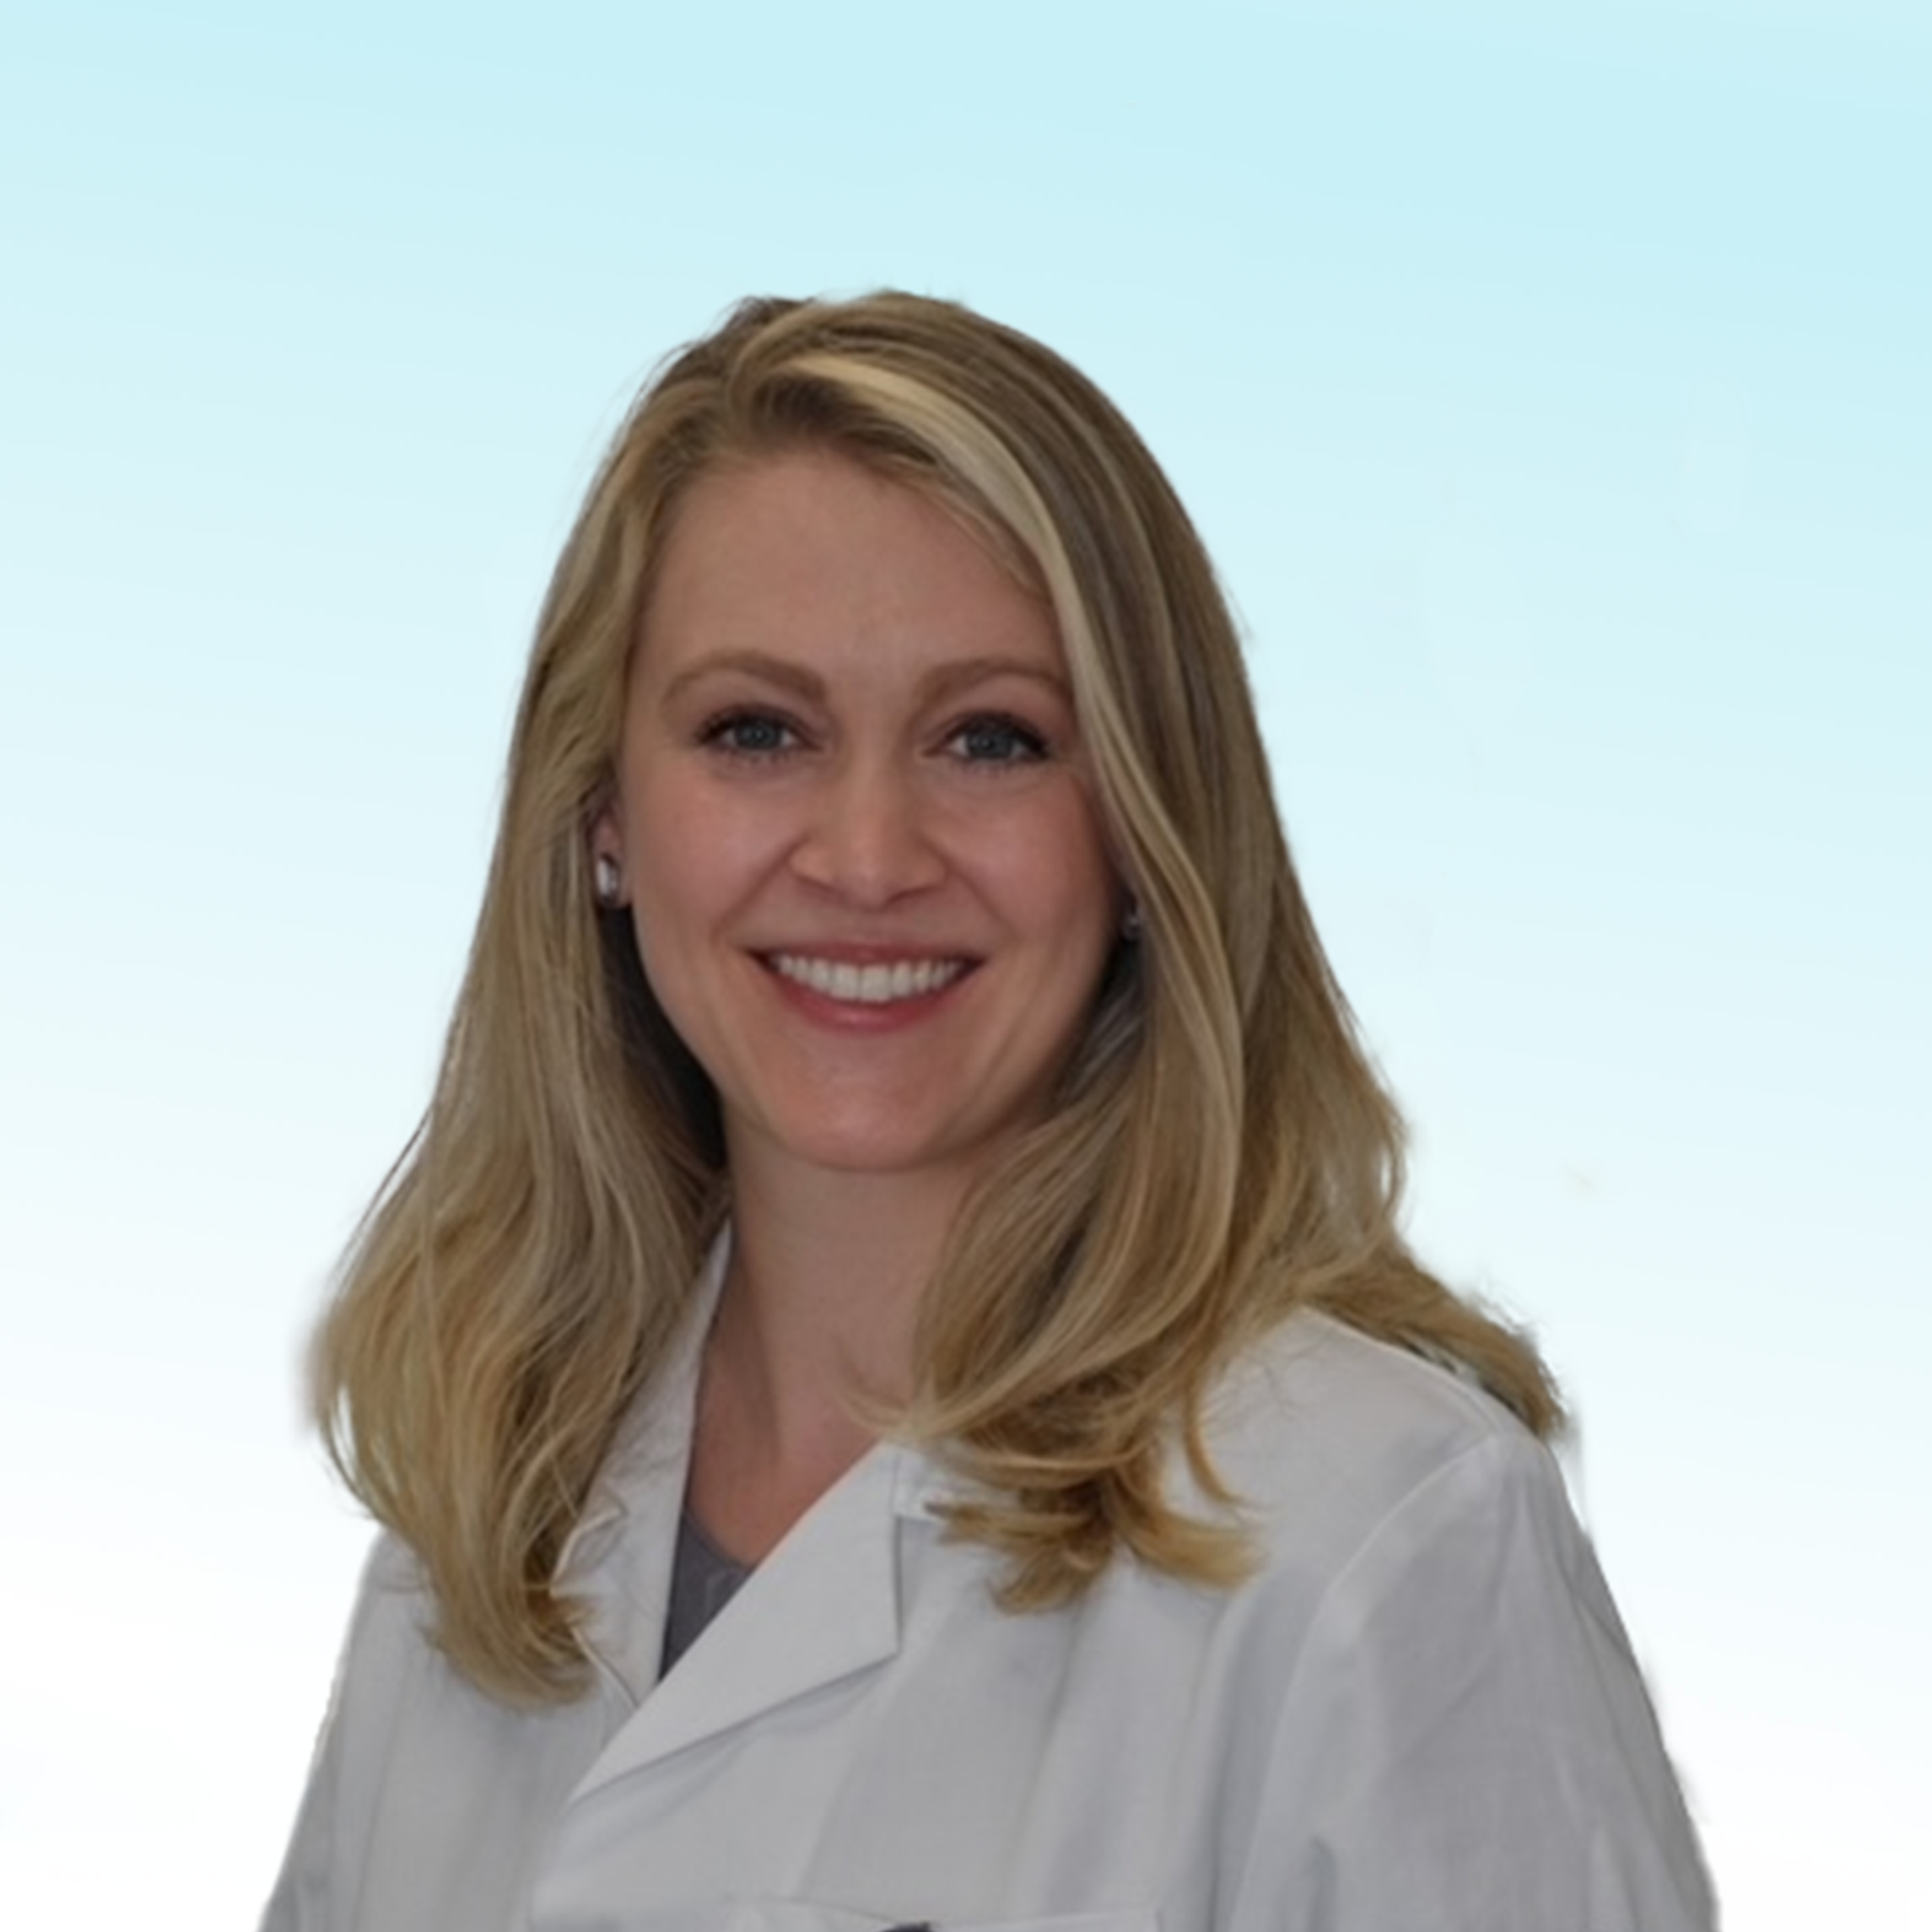 Dermatologue, Dr. med. Corinne Eggenschwiler